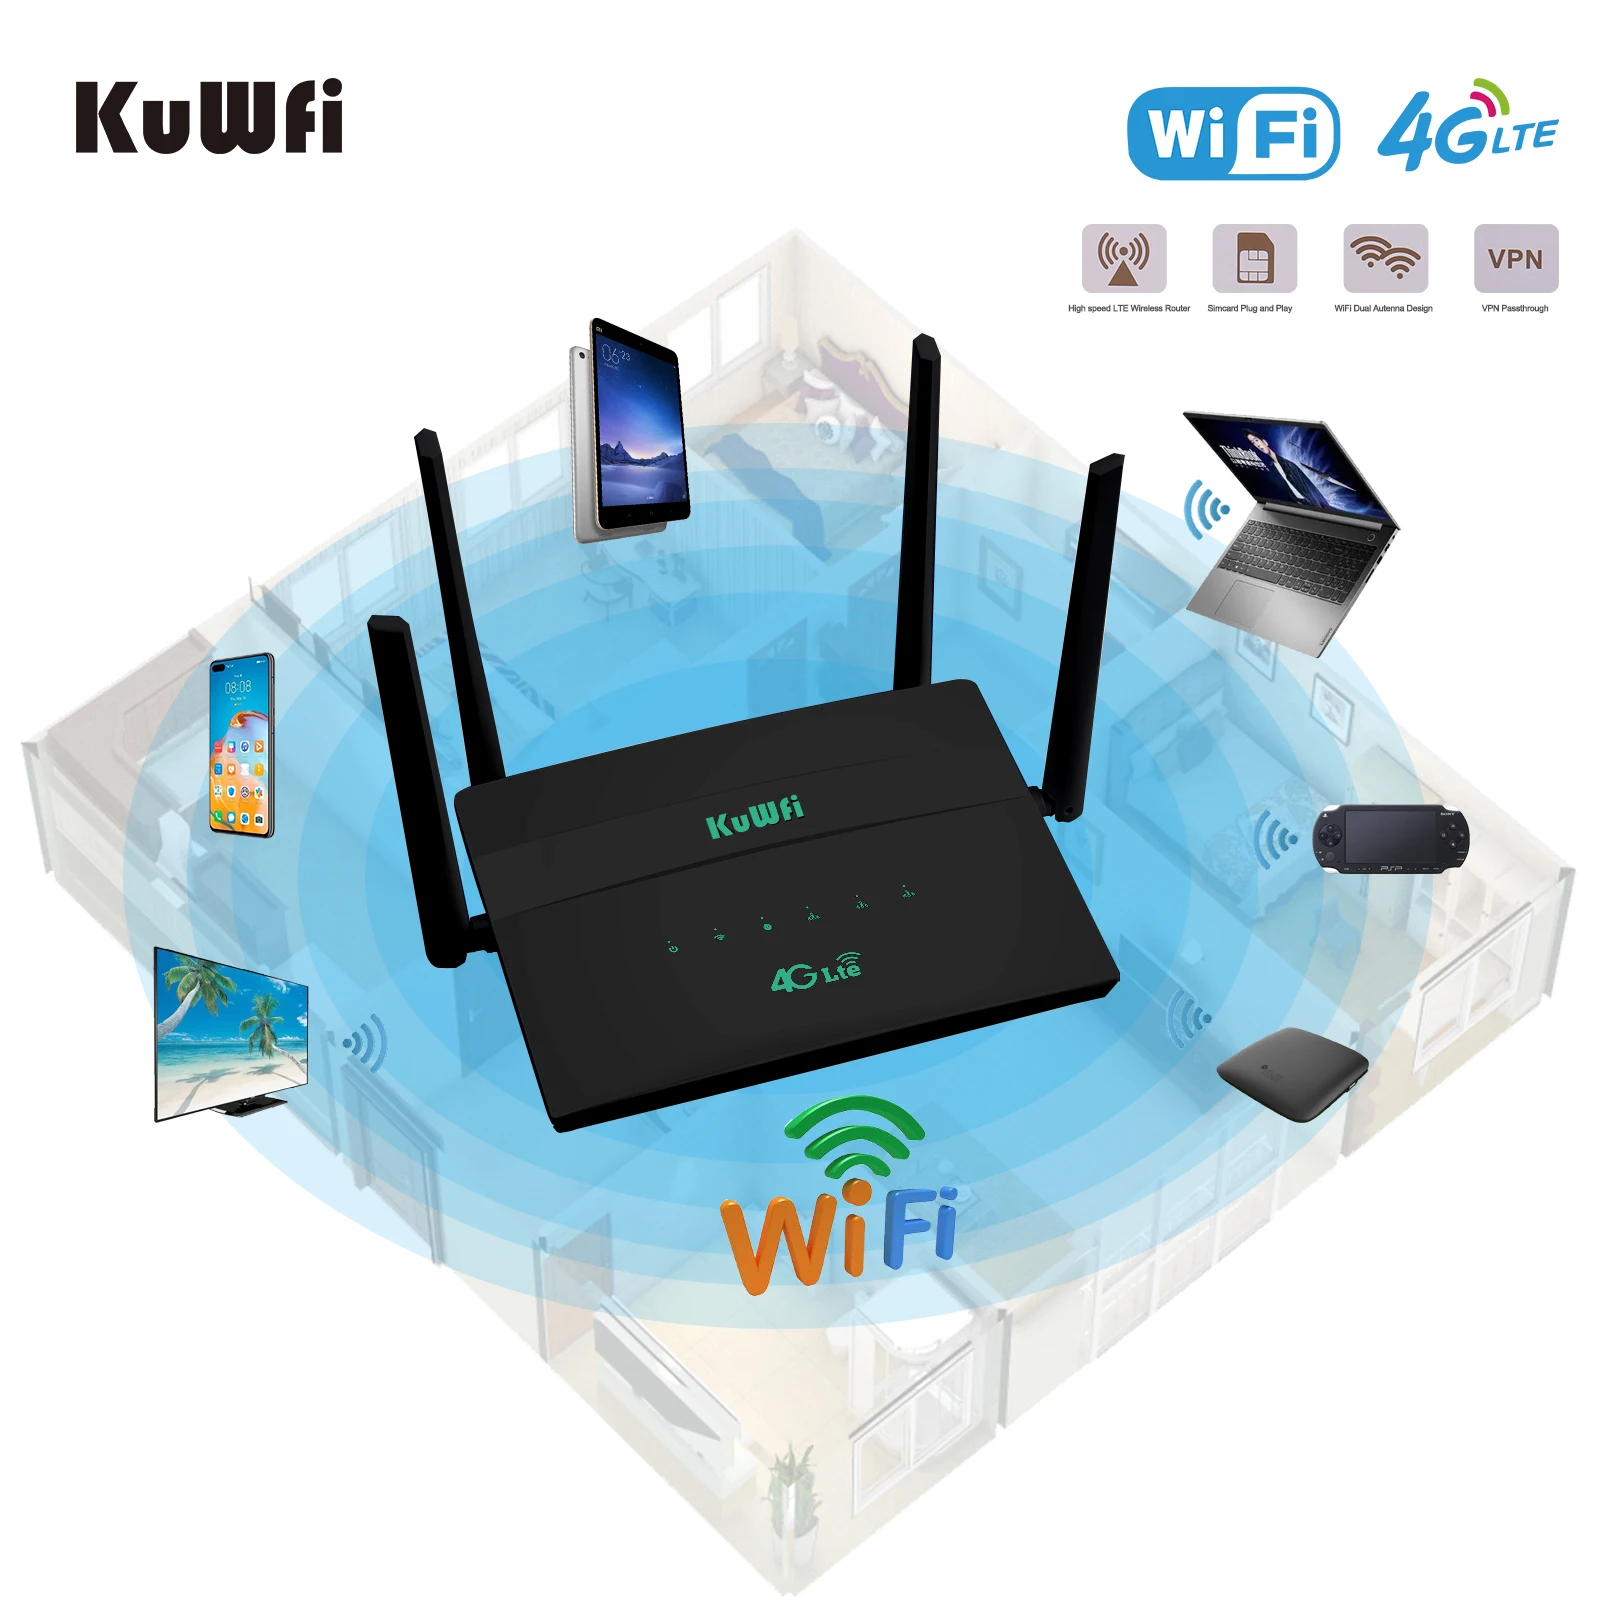 KuWFi 4G Wifi 300Mbps Không Dây SIM Router Có Khe SIM Modem Hỗ Trợ 32 Thành Viên Repeater 4 Ăng Ten VPN Thiết Lập wireless wifi router